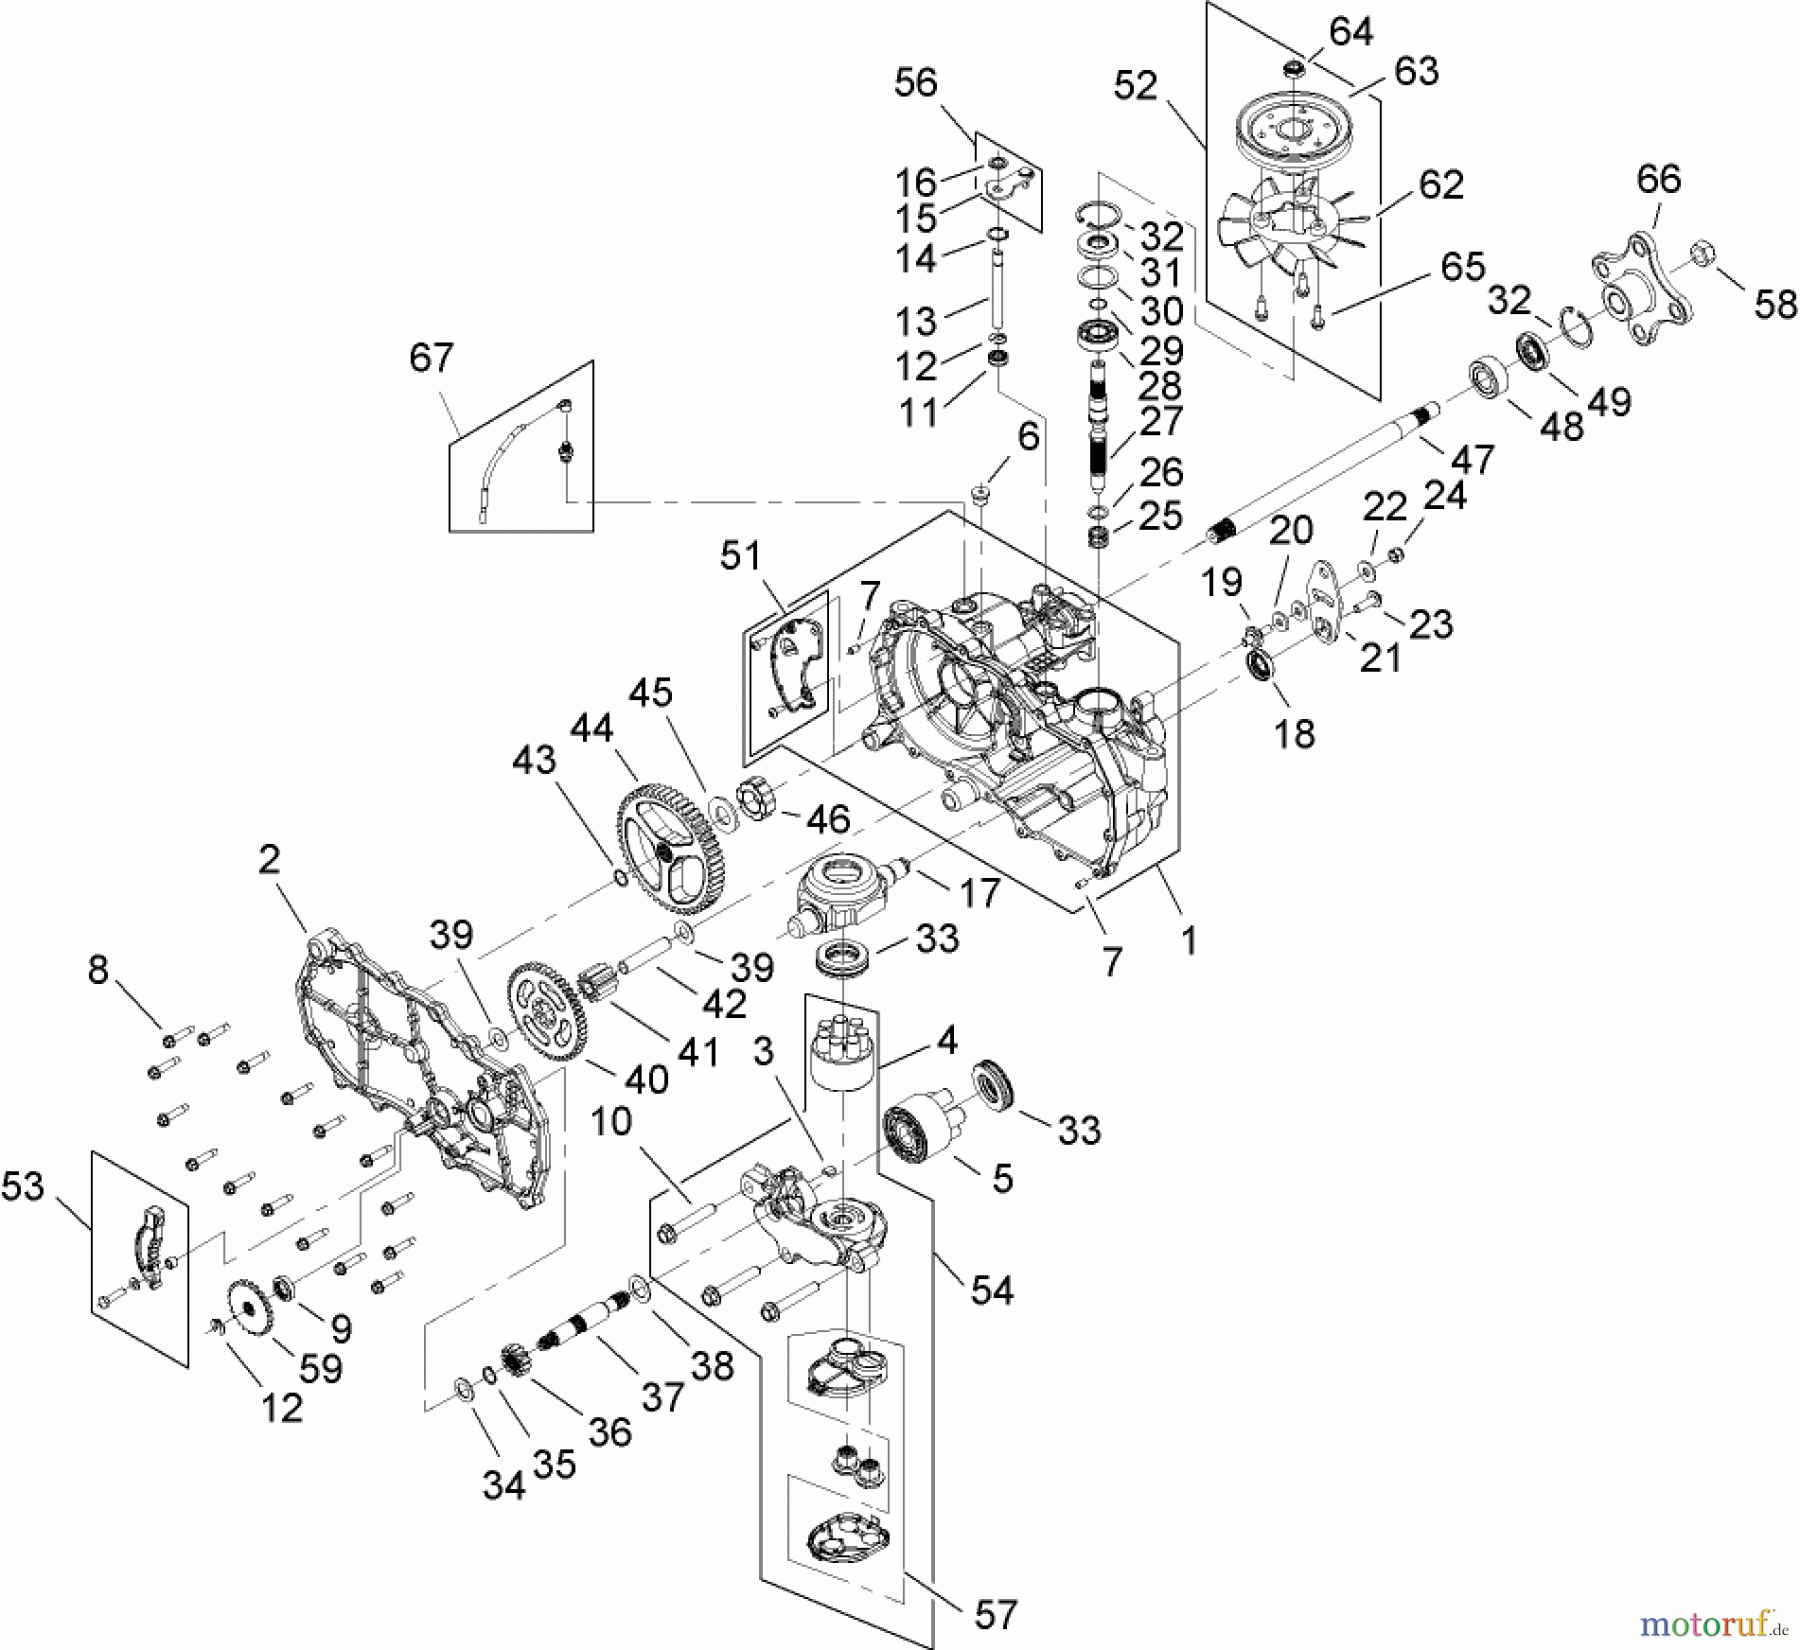  Toro Neu Accessories, Mower 114-8520 - Toro Right-Hand Transaxle Kit, Zero-Turn-Radius Riding Mower RH HYDRO TRANSAXLE ASSEMBLY NO. 112-4761